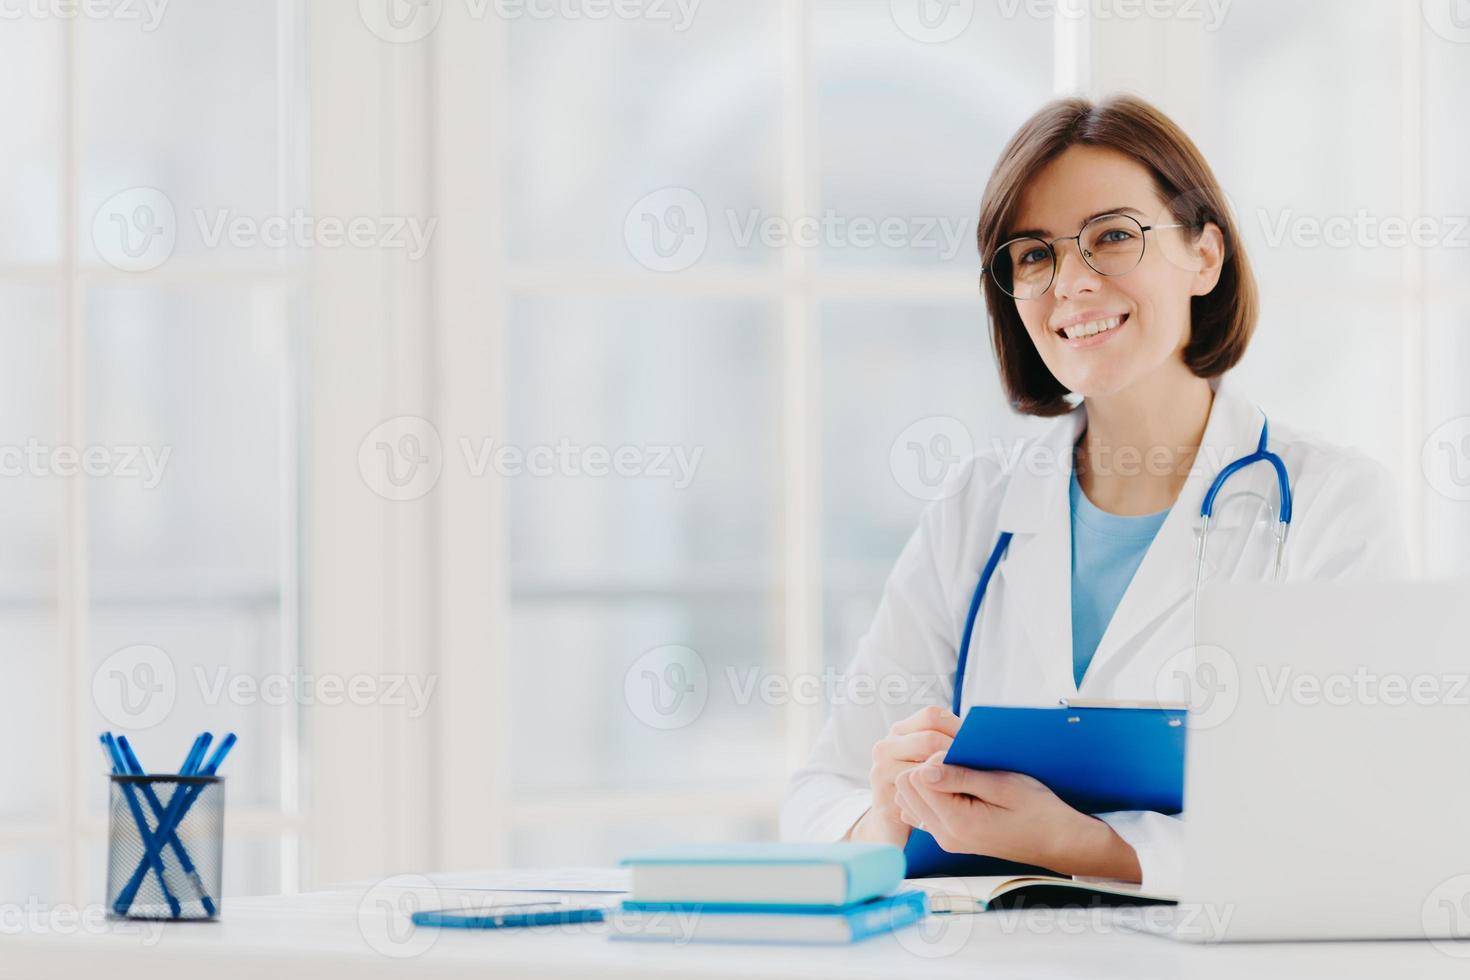 kvinnlig läkare skriver ut recept på specialformulär, arbetar på privat klinik, bär vit sjukvårdsrock, redo att träffa patienter, poserar på arbetsplatsen. leende läkare eller medicinsk arbetare håller urklipp foto